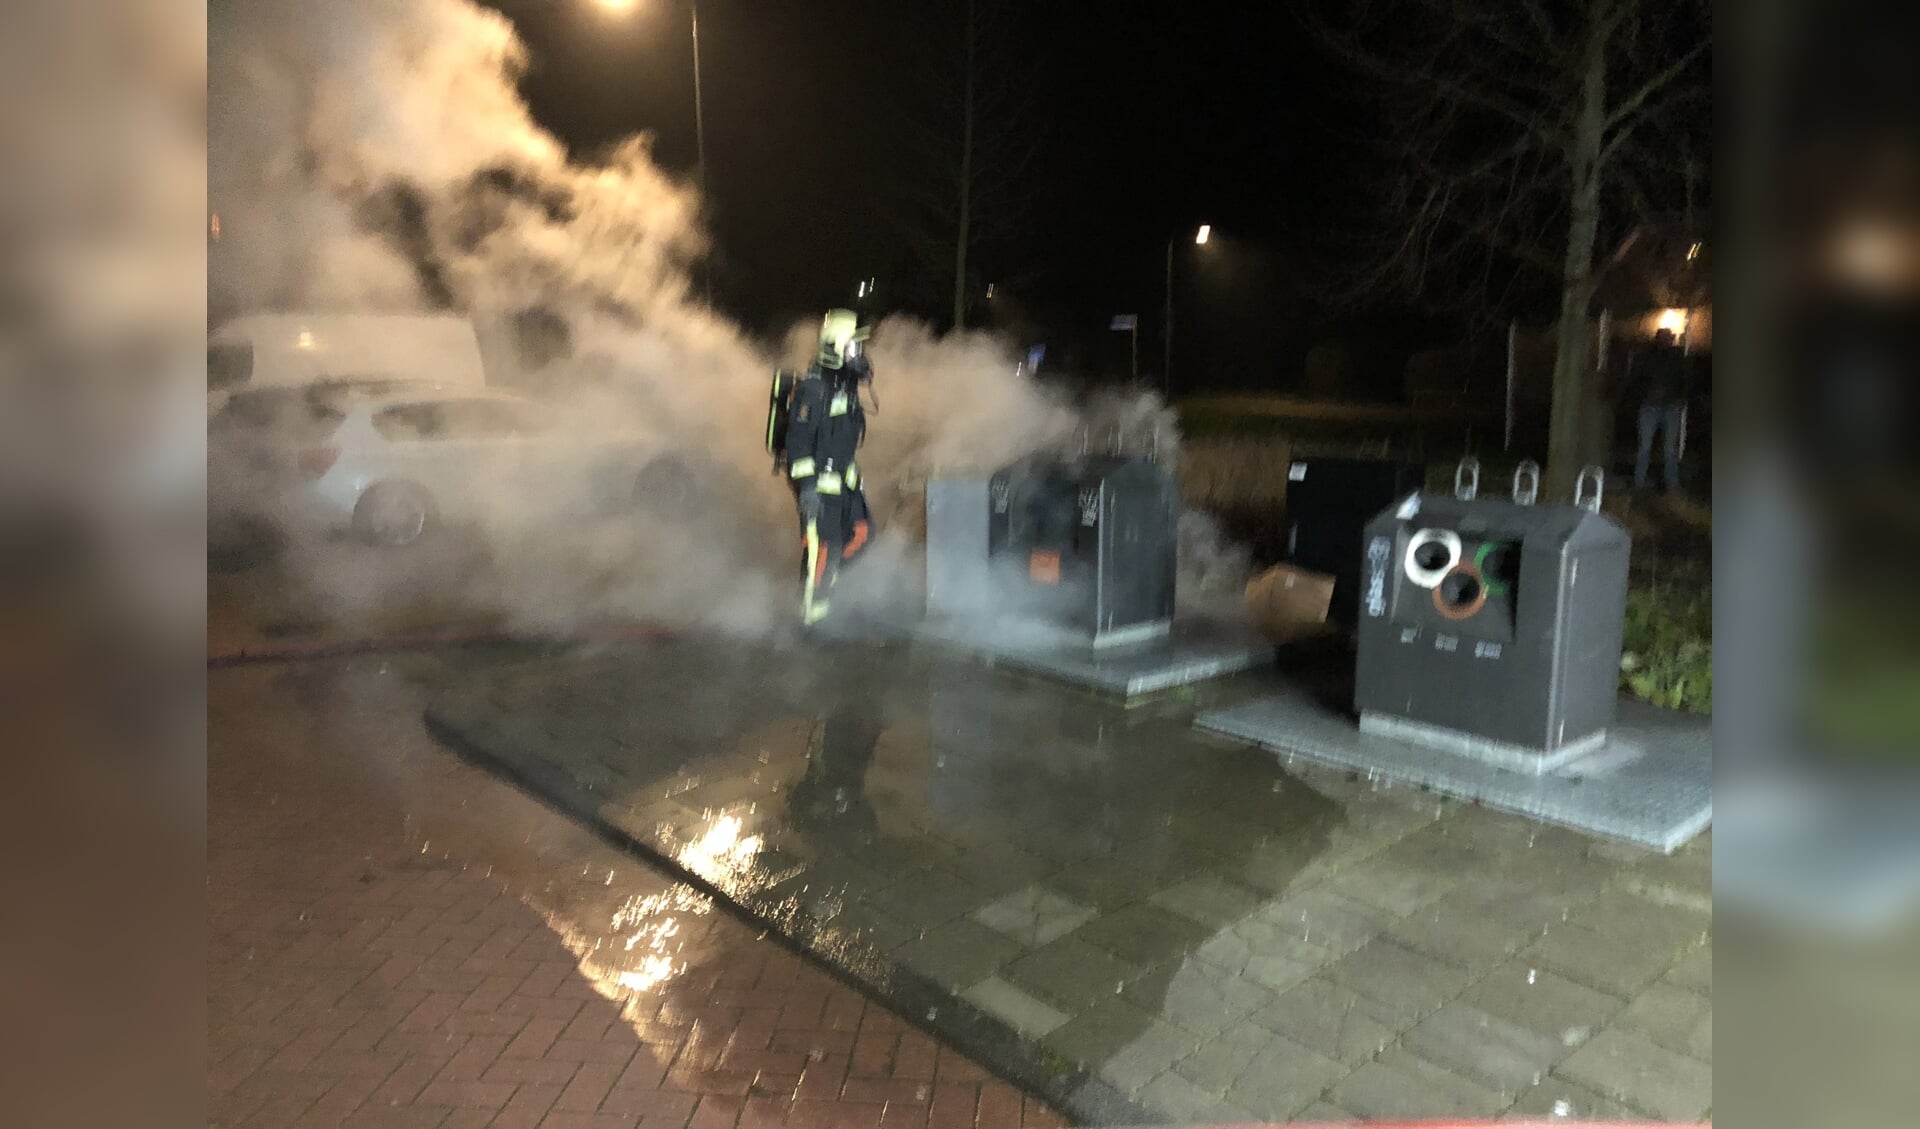 • De brandweer van Gouderak moest uitrukken om een brand in een ondergrondse kledingcontainer in Lageweg te blussen. 